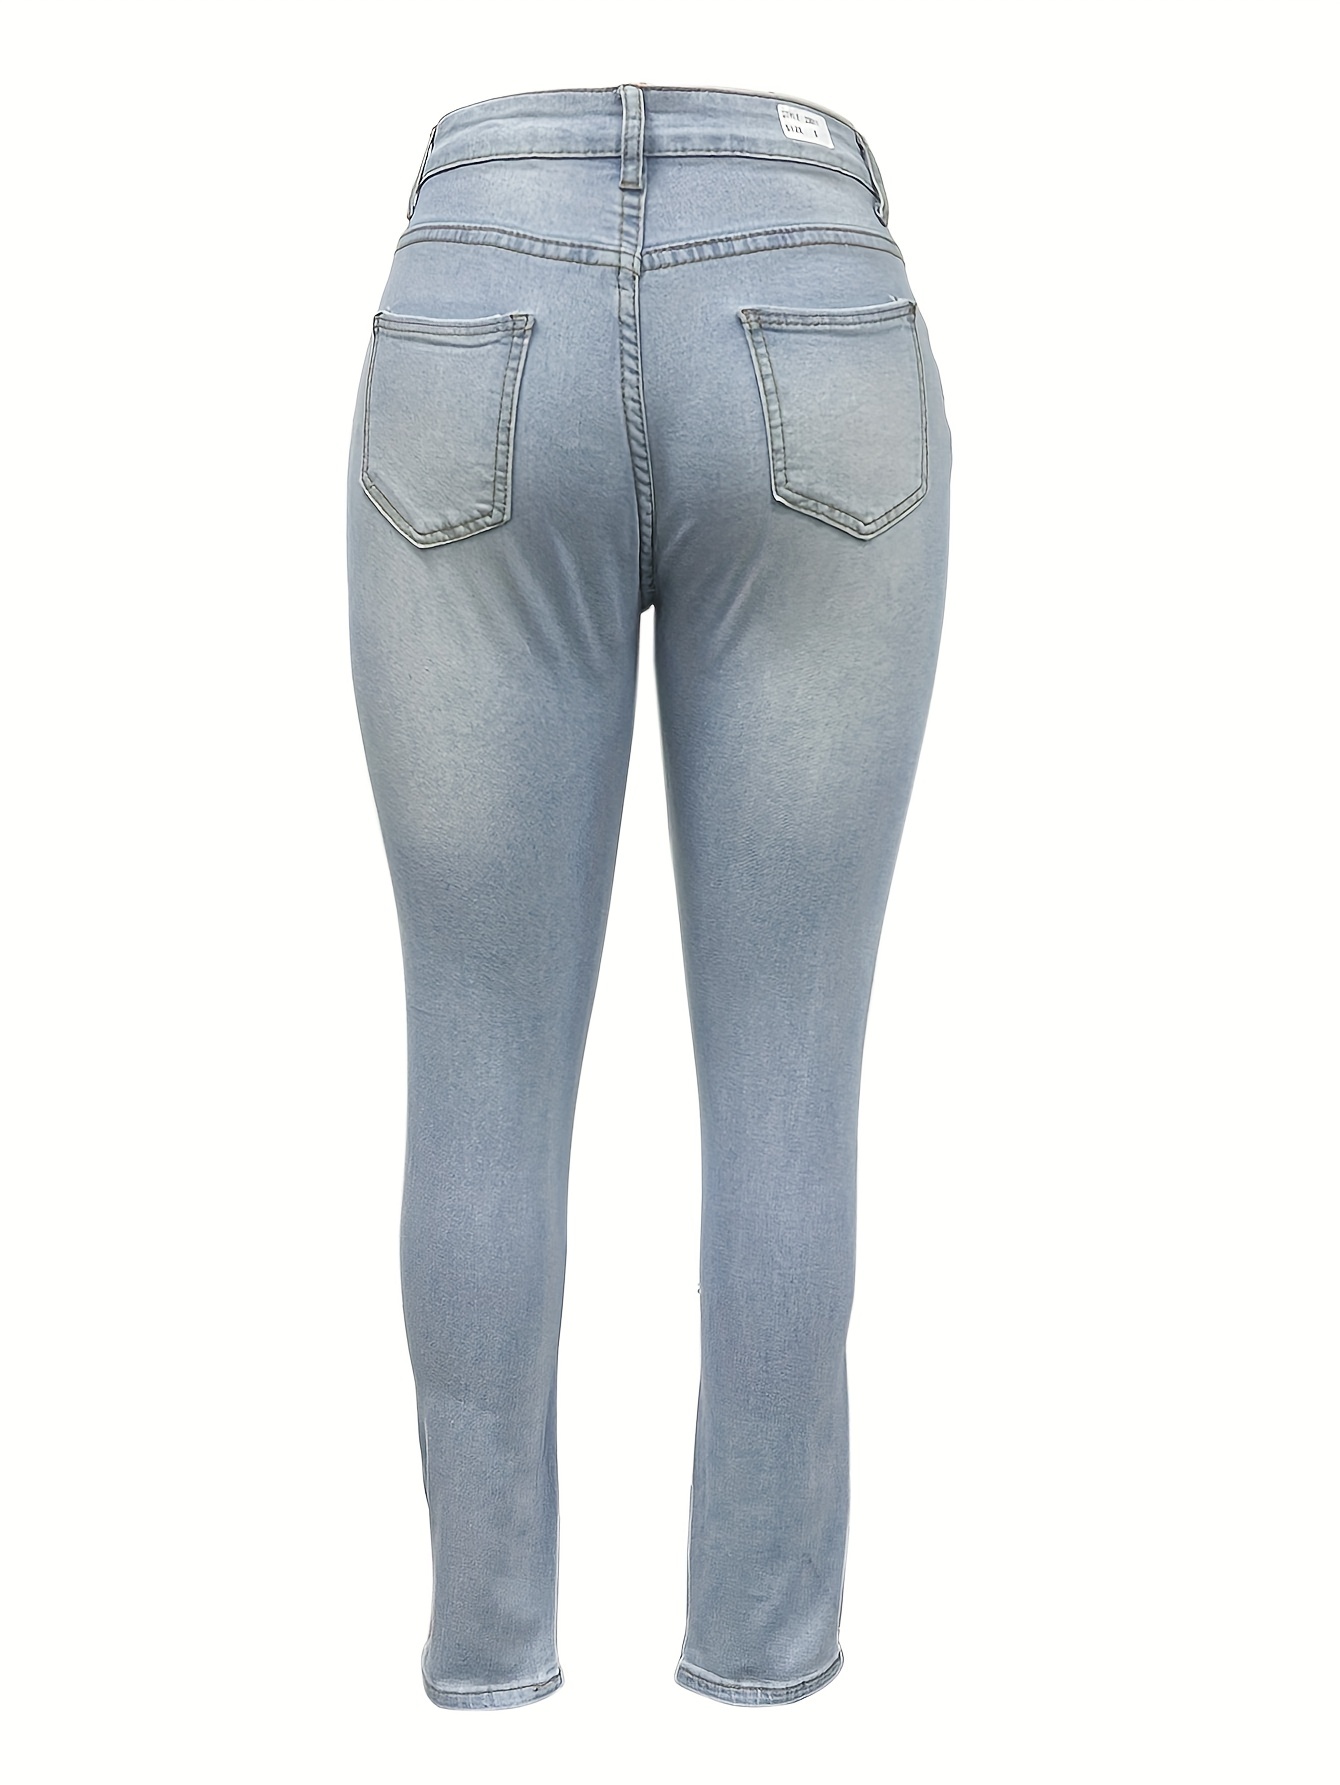 Jeans ajustados para mujer, pantalones de mezclilla a la moda, con curvas,  pantalones elegantes desgastados con bolsillos